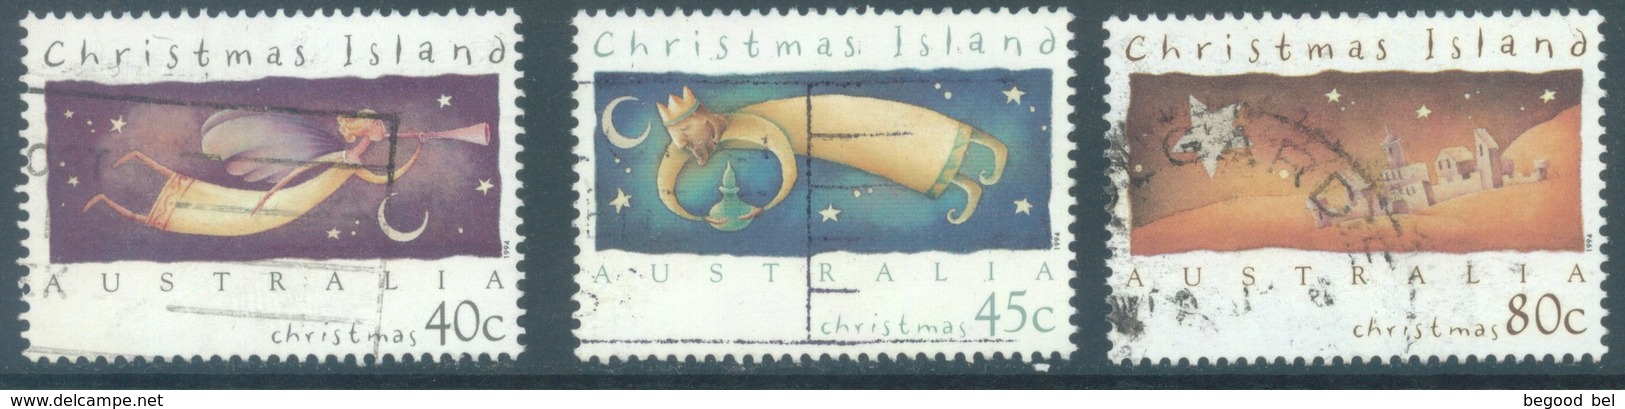 CHRISTMAS - USED/OBLIT.- 1994 - CHRISTMAS - Yv 410-412 - Lot 19073 - Christmas Island